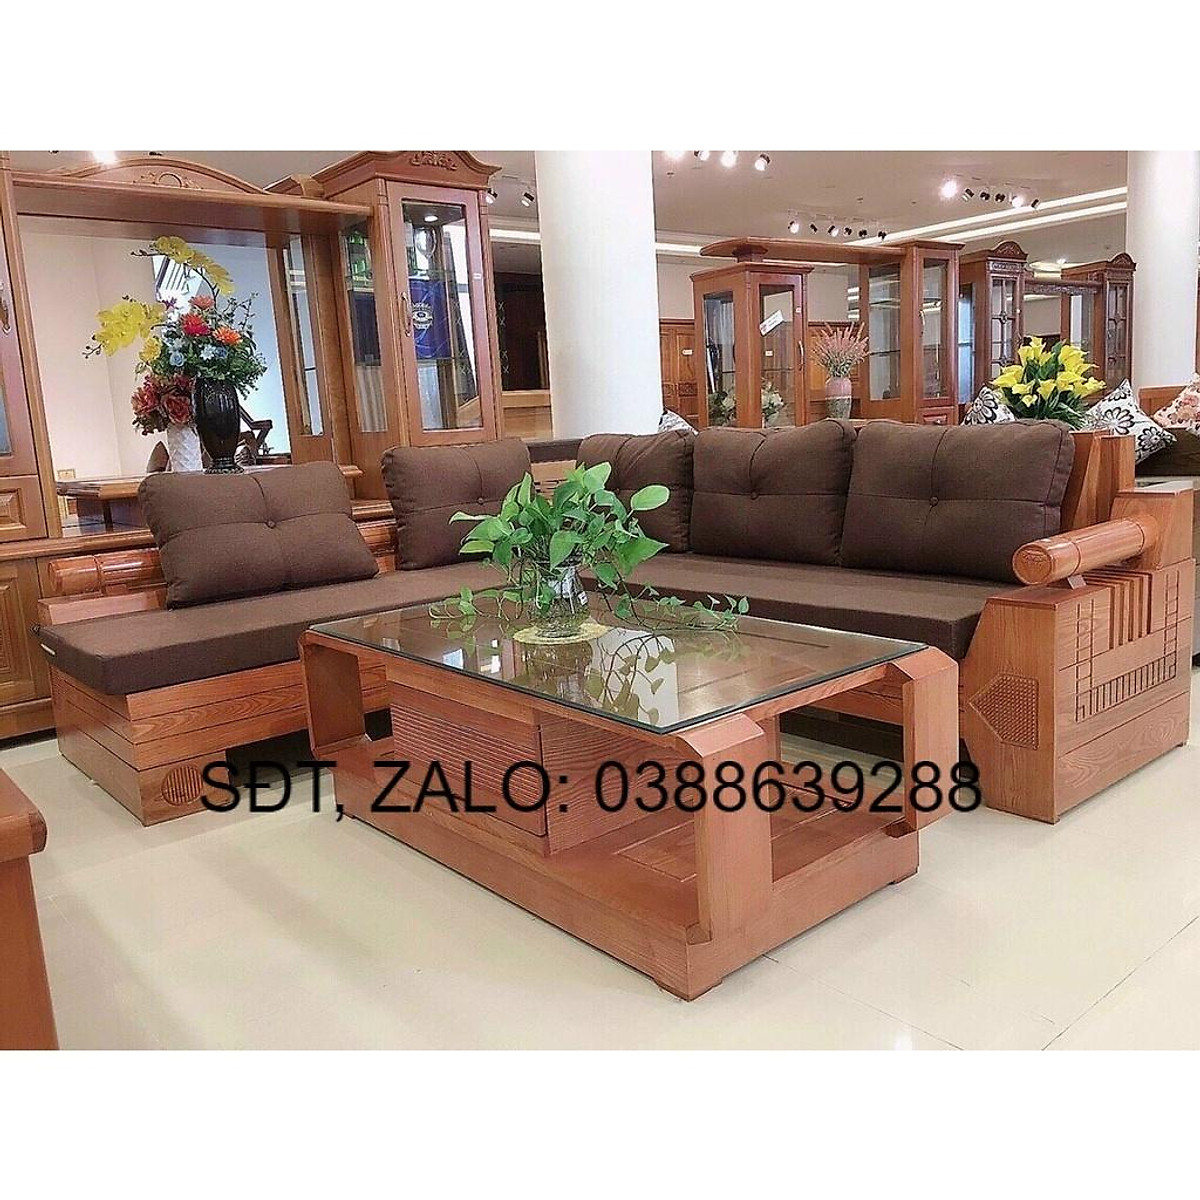 Không gian phòng khách của bạn sẽ trở nên ấm cúng và sang trọng hơn với bộ bàn ghế phòng khách được làm từ gỗ xoan đào. Chất liệu gỗ cao cấp và thiết kế tinh tế, tạo ra một sự kết hợp hoàn hảo giữa độ bền, tính thẩm mỹ và sự thoải mái cho người sử dụng. Hãy để hình ảnh tuyệt đẹp đó giúp bạn hình dung và lựa chọn những bộ bàn ghế phù hợp nhất!